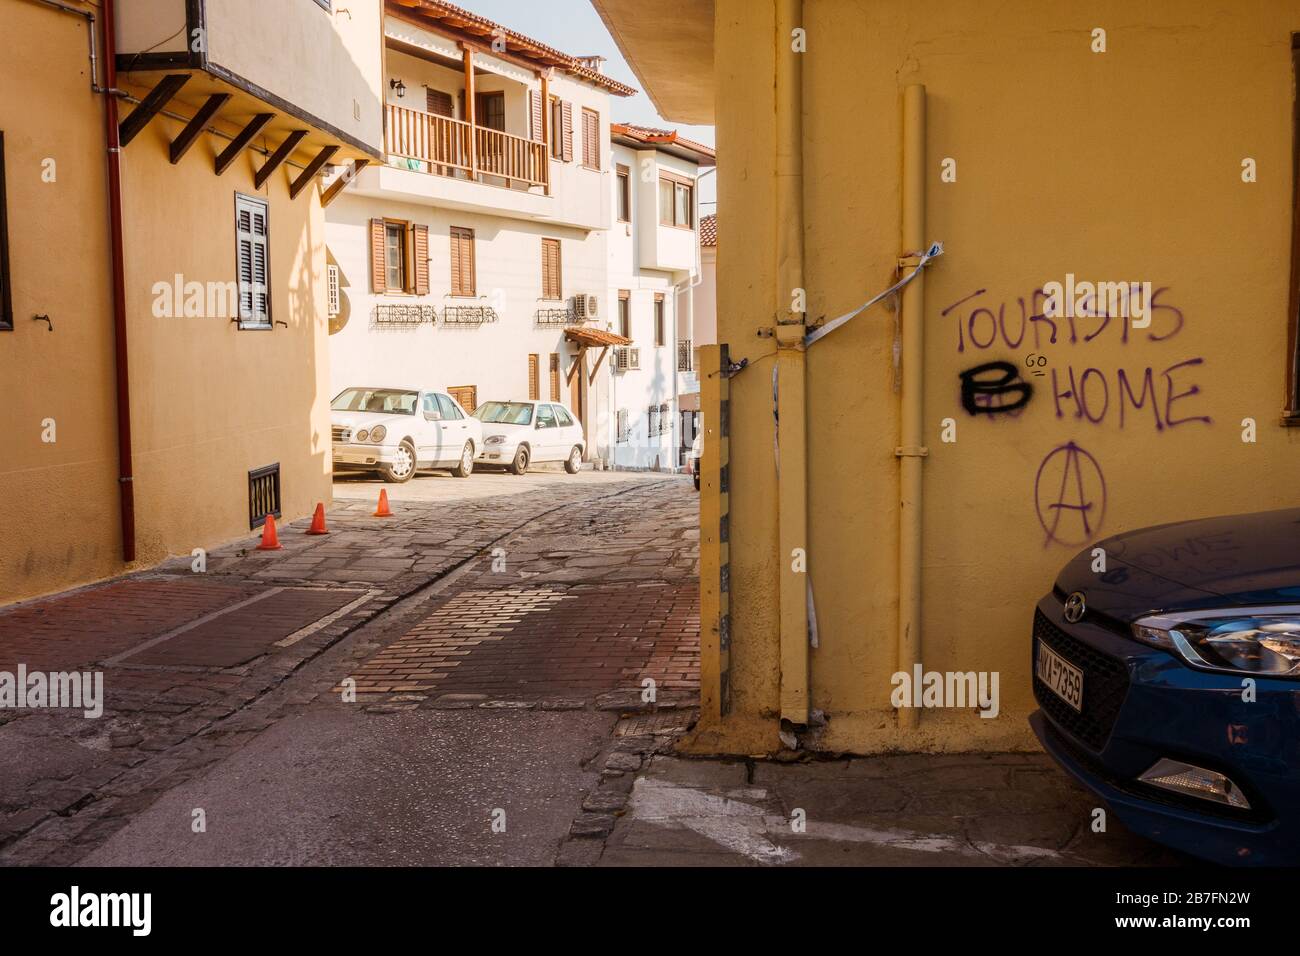 'I turisti vanno a casa' è cambiato in 'turisti B casa' - anti-turismo ha trasformato graffiti pro-turismo su un muro a Salonicco, Grecia Foto Stock